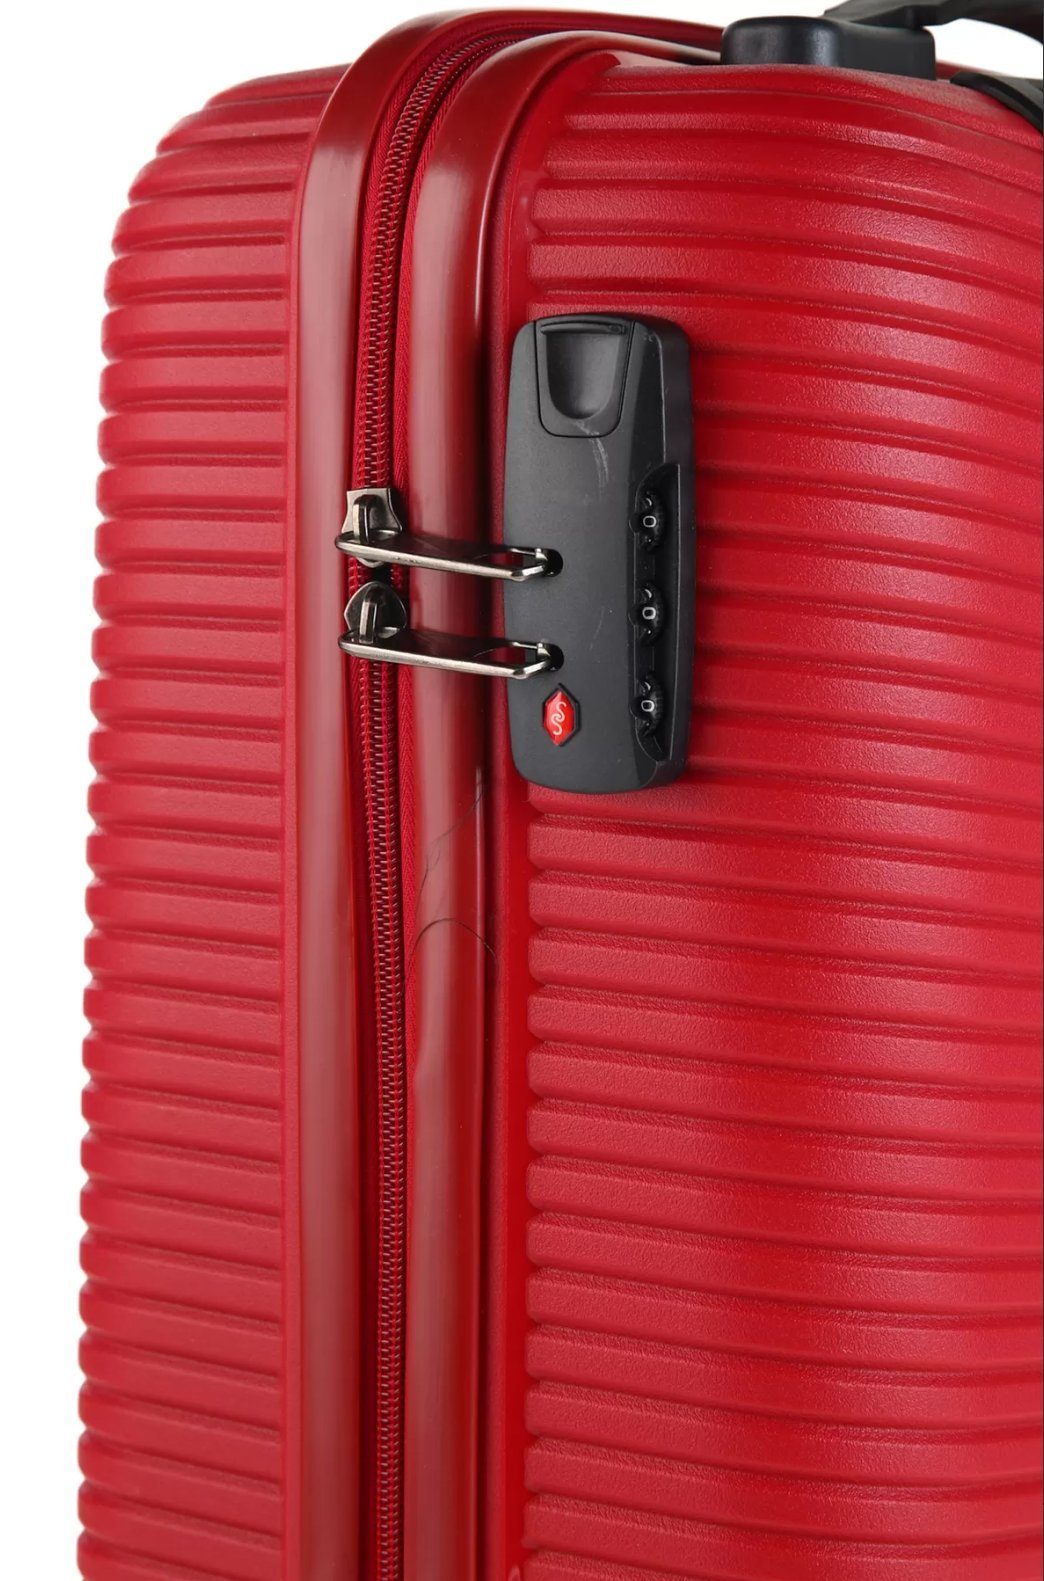 CCS Kofferset, (3 Rot - Koffer) mittleren Koffer teilig, großen + + Handgepäck